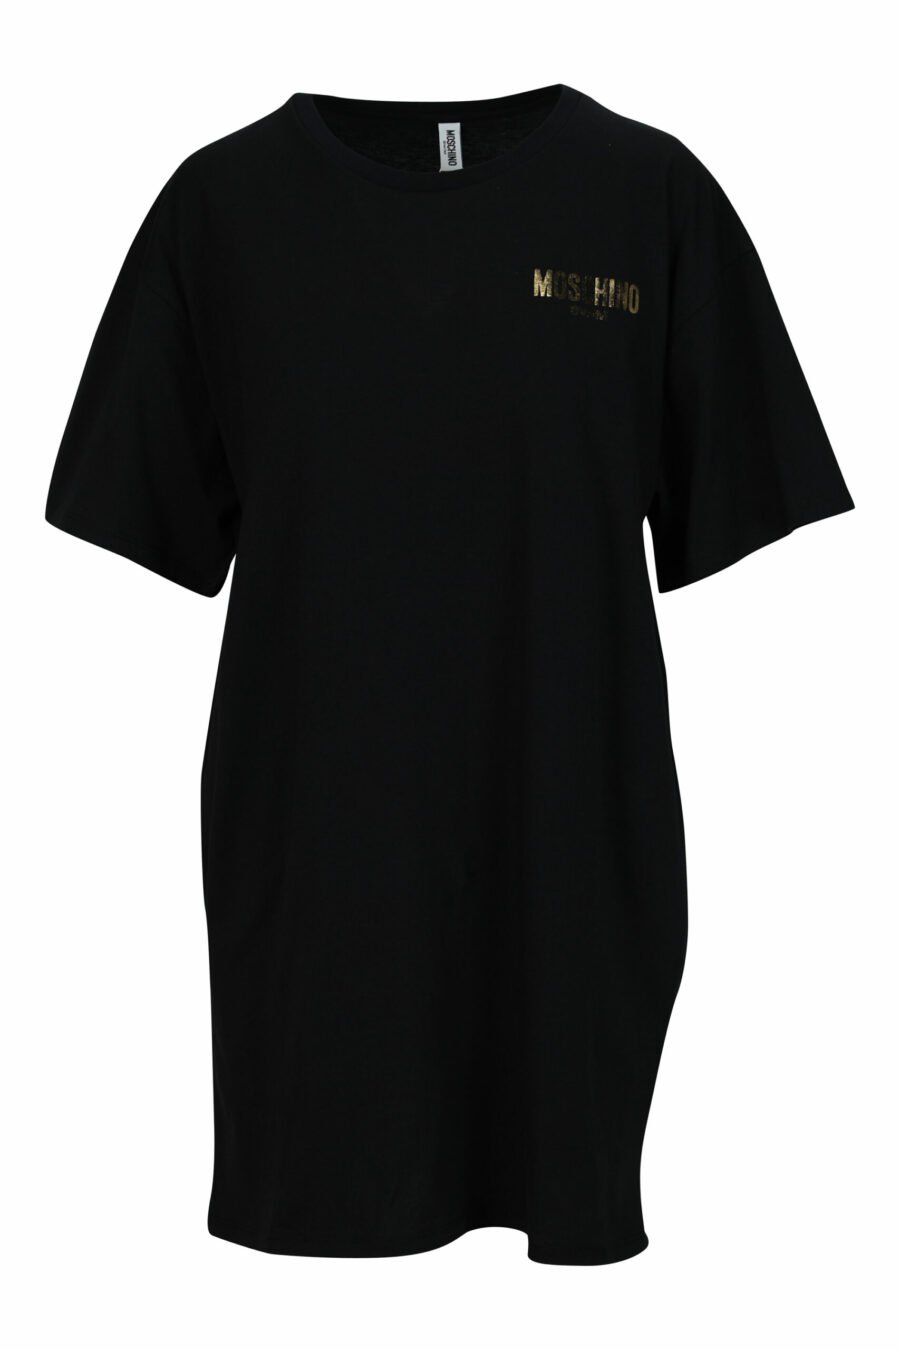 Vestido negro con logo "lettering" dorado - 667113355863 scaled